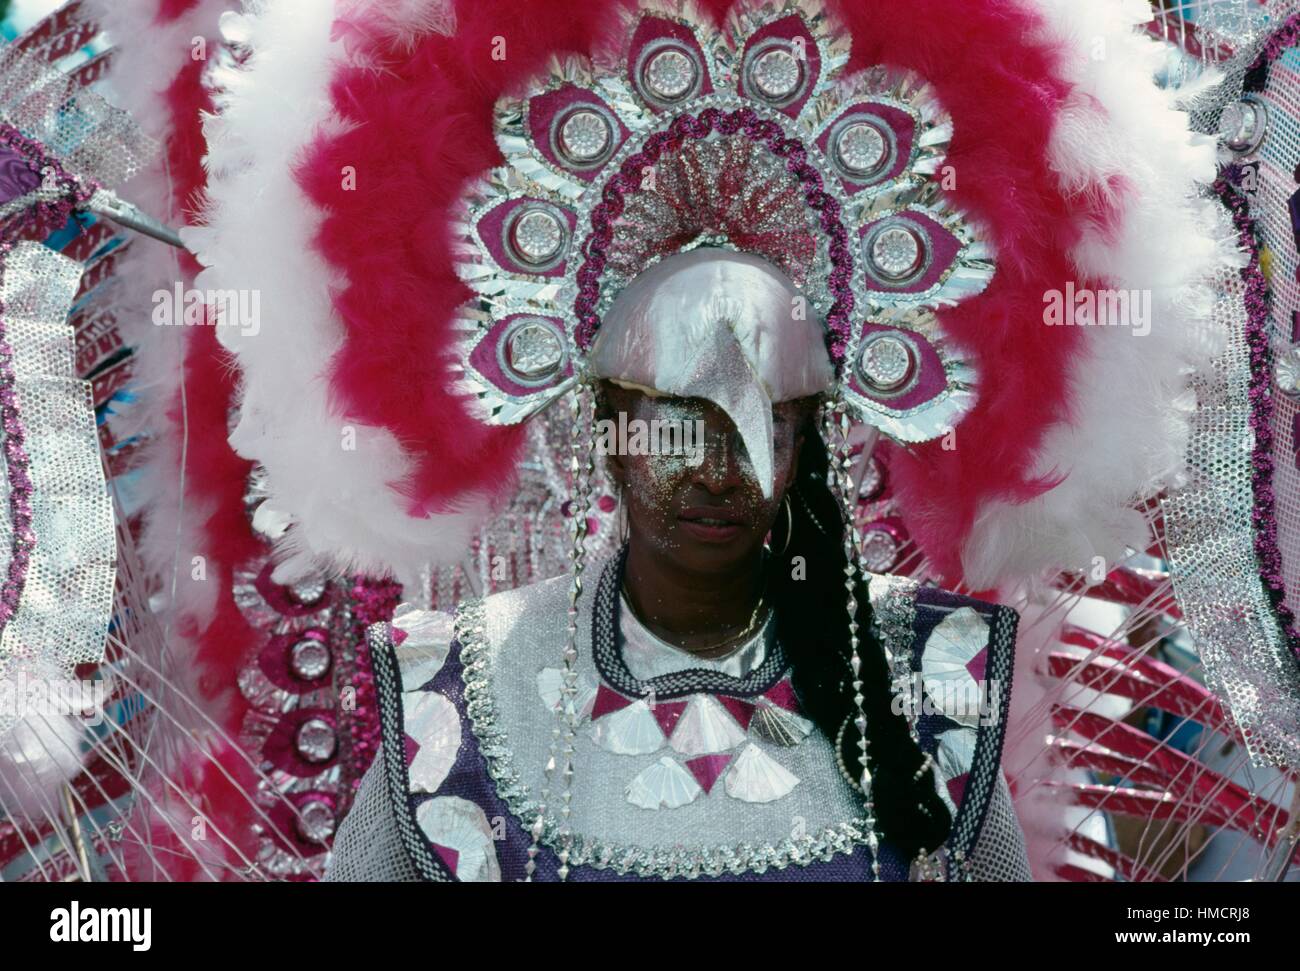 Masque de carnaval avec un bec, Port-of-Spain, Trinité-et-Tobago. Banque D'Images